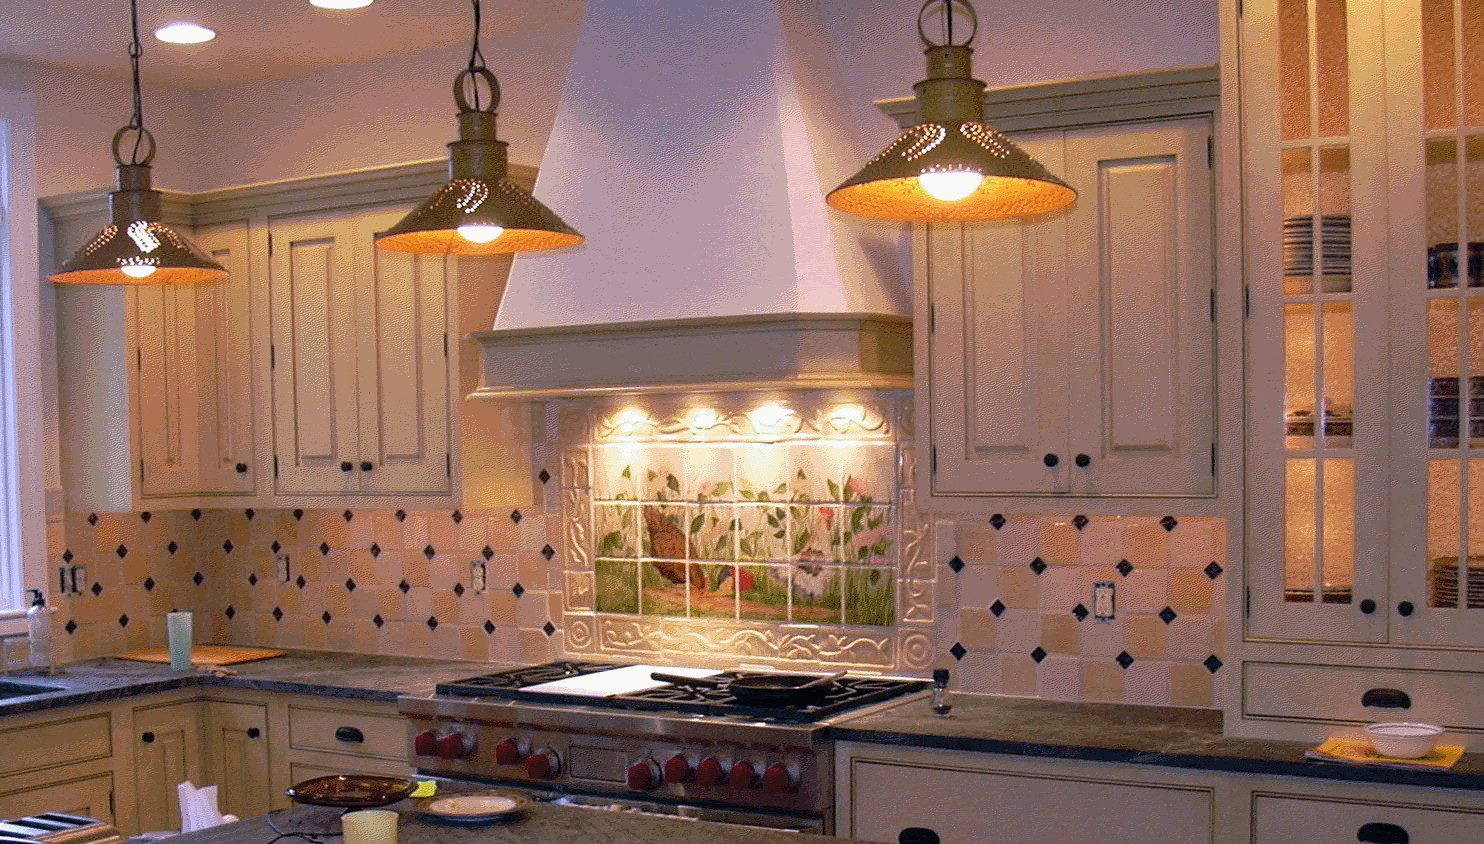 Decorative Kitchen Tiles
 Decorative Tiles